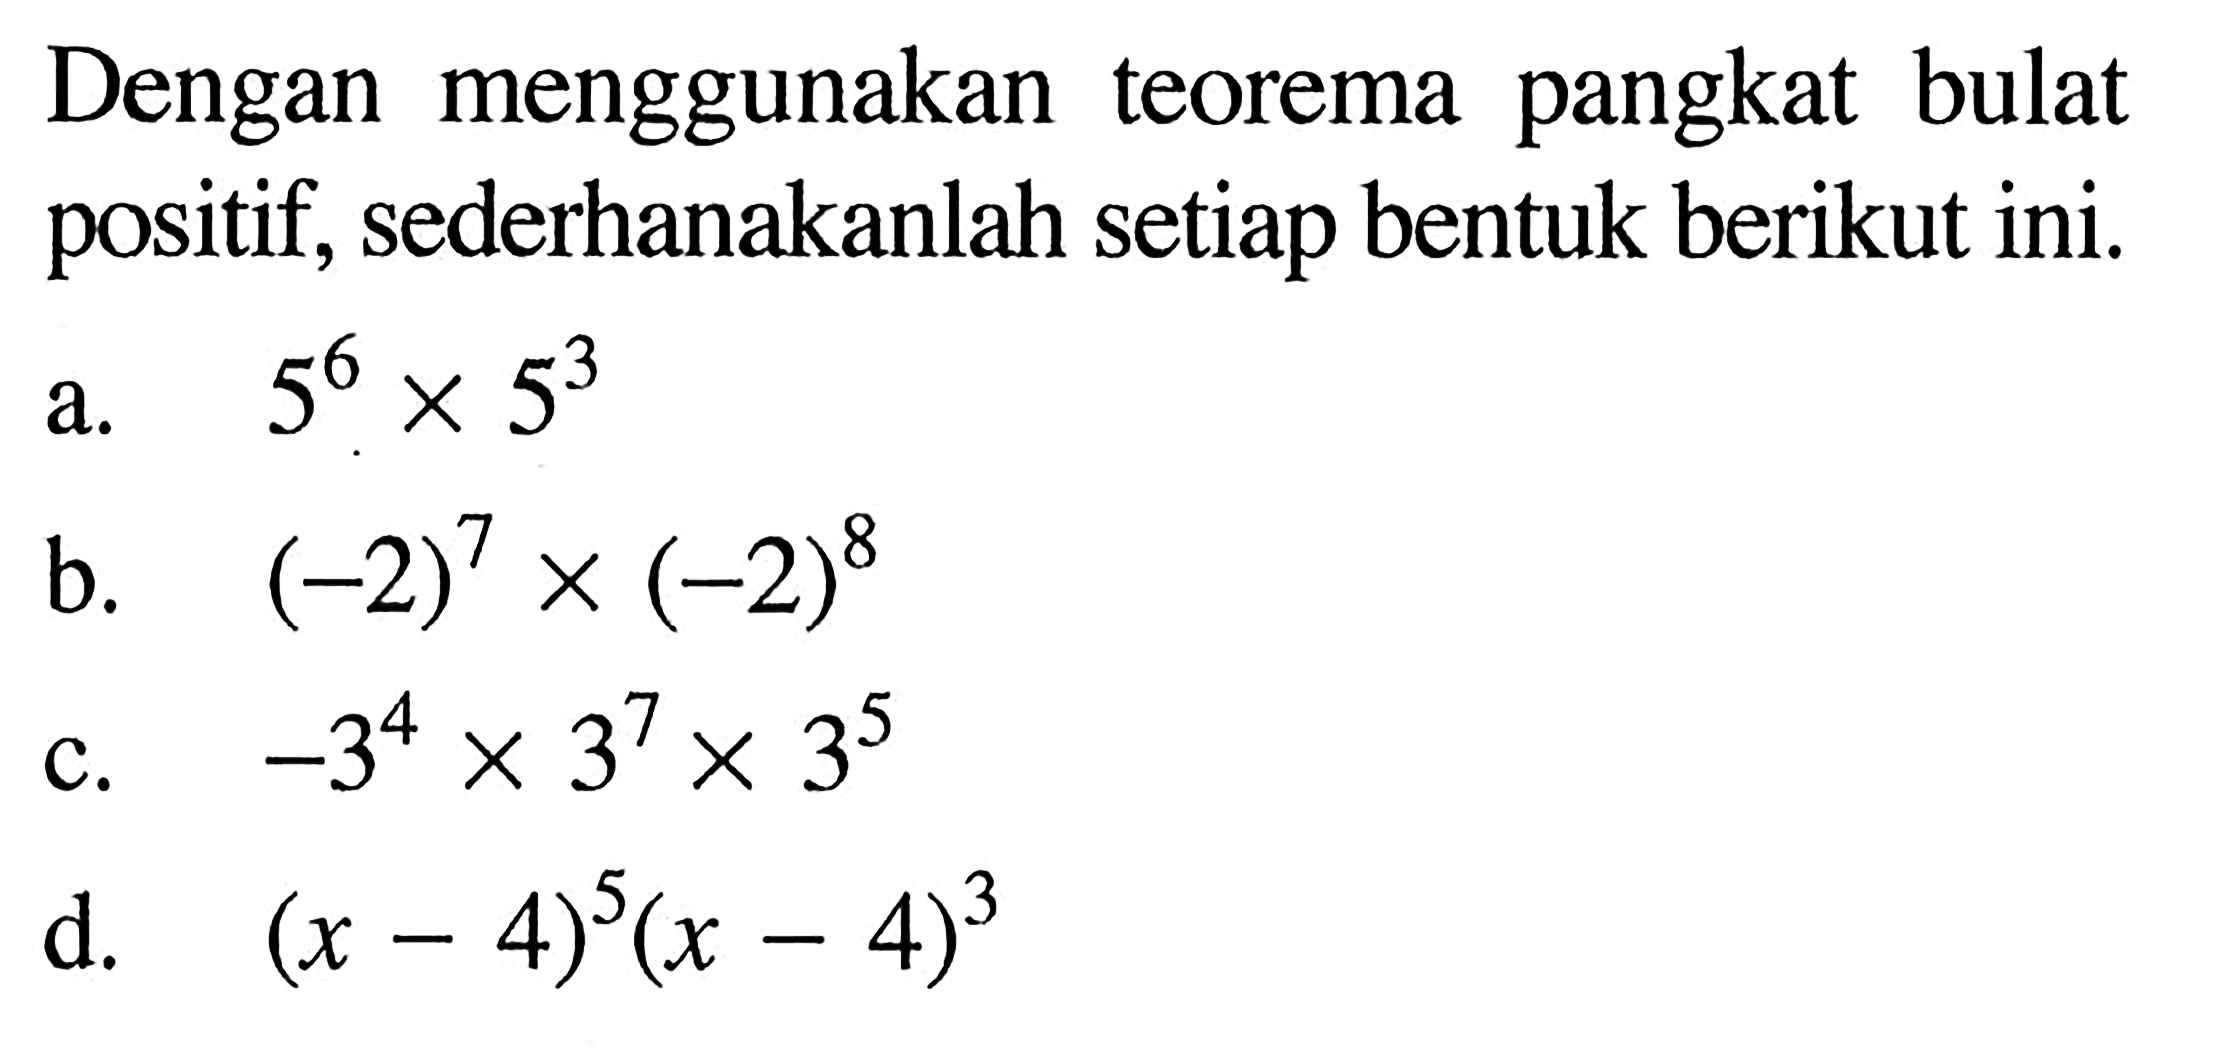 Dengan menggunakan pangkat bulat teorema positif, sederhanakanlah setiap bentuk berikut ini. a. 5^6 x 5^3 b. (-2)^7 x (-2)^7 c. 3^4 x 3^7 x 3^5 d. (x - 4)^5 (x -4)^3